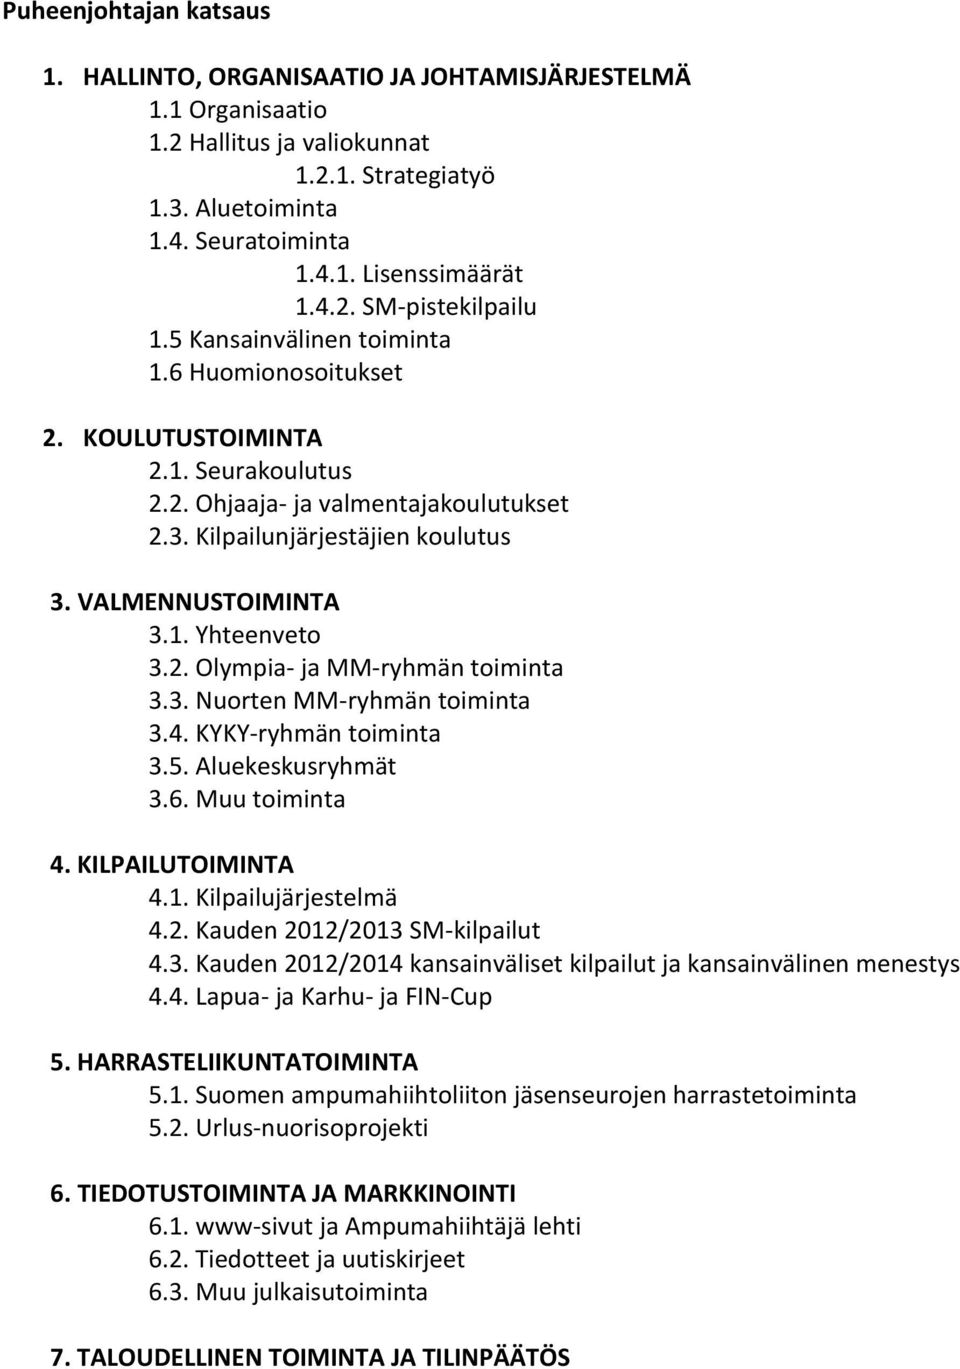 3. Nuorten MM-ryhmän tomnt 3.4. KYKY-ryhmän tomnt 3.5. Aluekeskusryhmät 3.6. Muu tomnt 4. KILPAILTOIMINTA 4.1. Klplujärjestelmä 4.2. Kuden 2012/2013 SM-klplut 4.3. Kuden 2012/2014 knsnvälset klplut j knsnvälnen menestys 4.